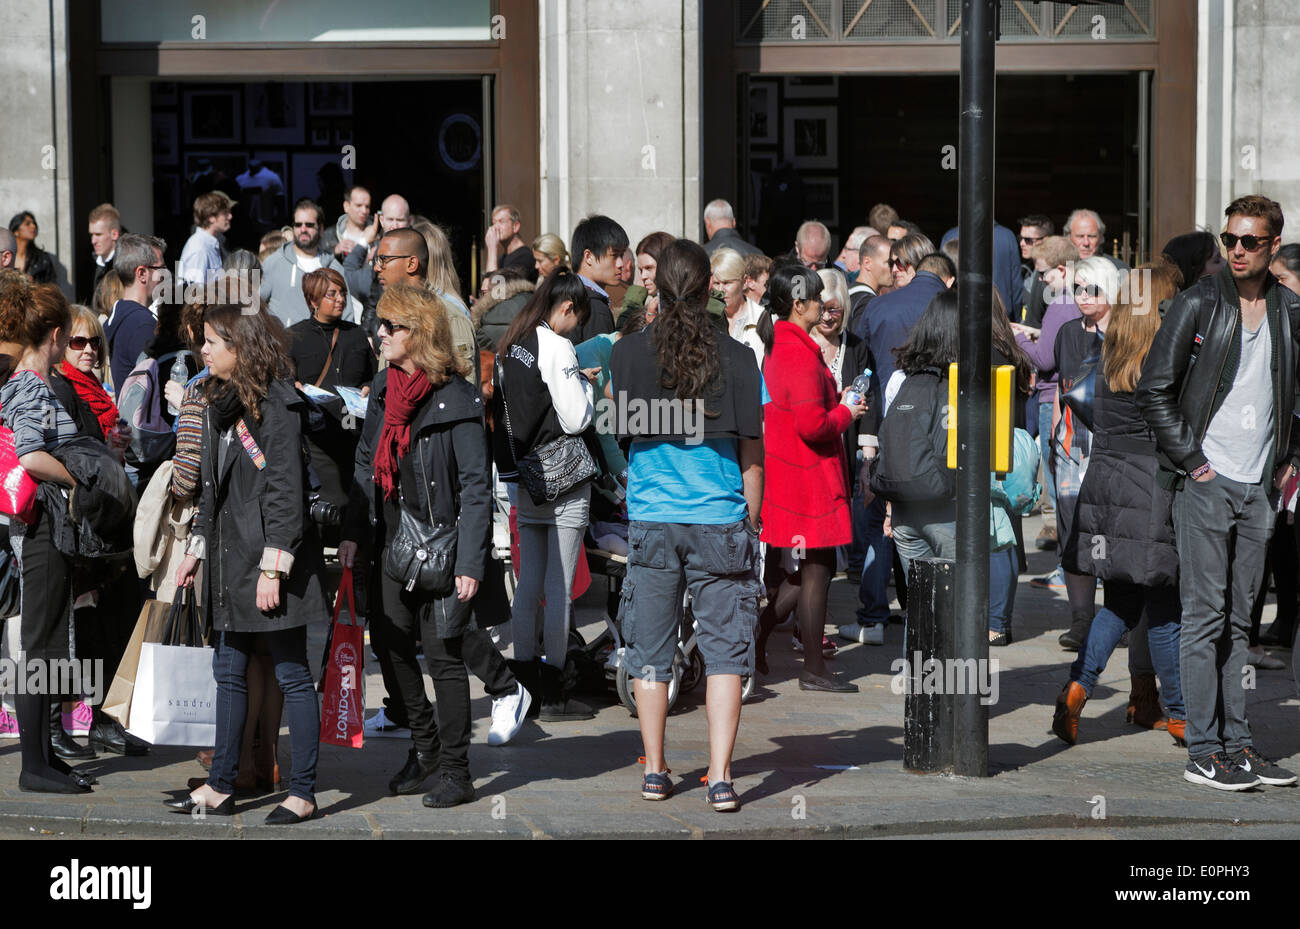 Beschäftigt London Street, Wochenende und Feiertagen, Oxford Street, London, England, UK Stockfoto